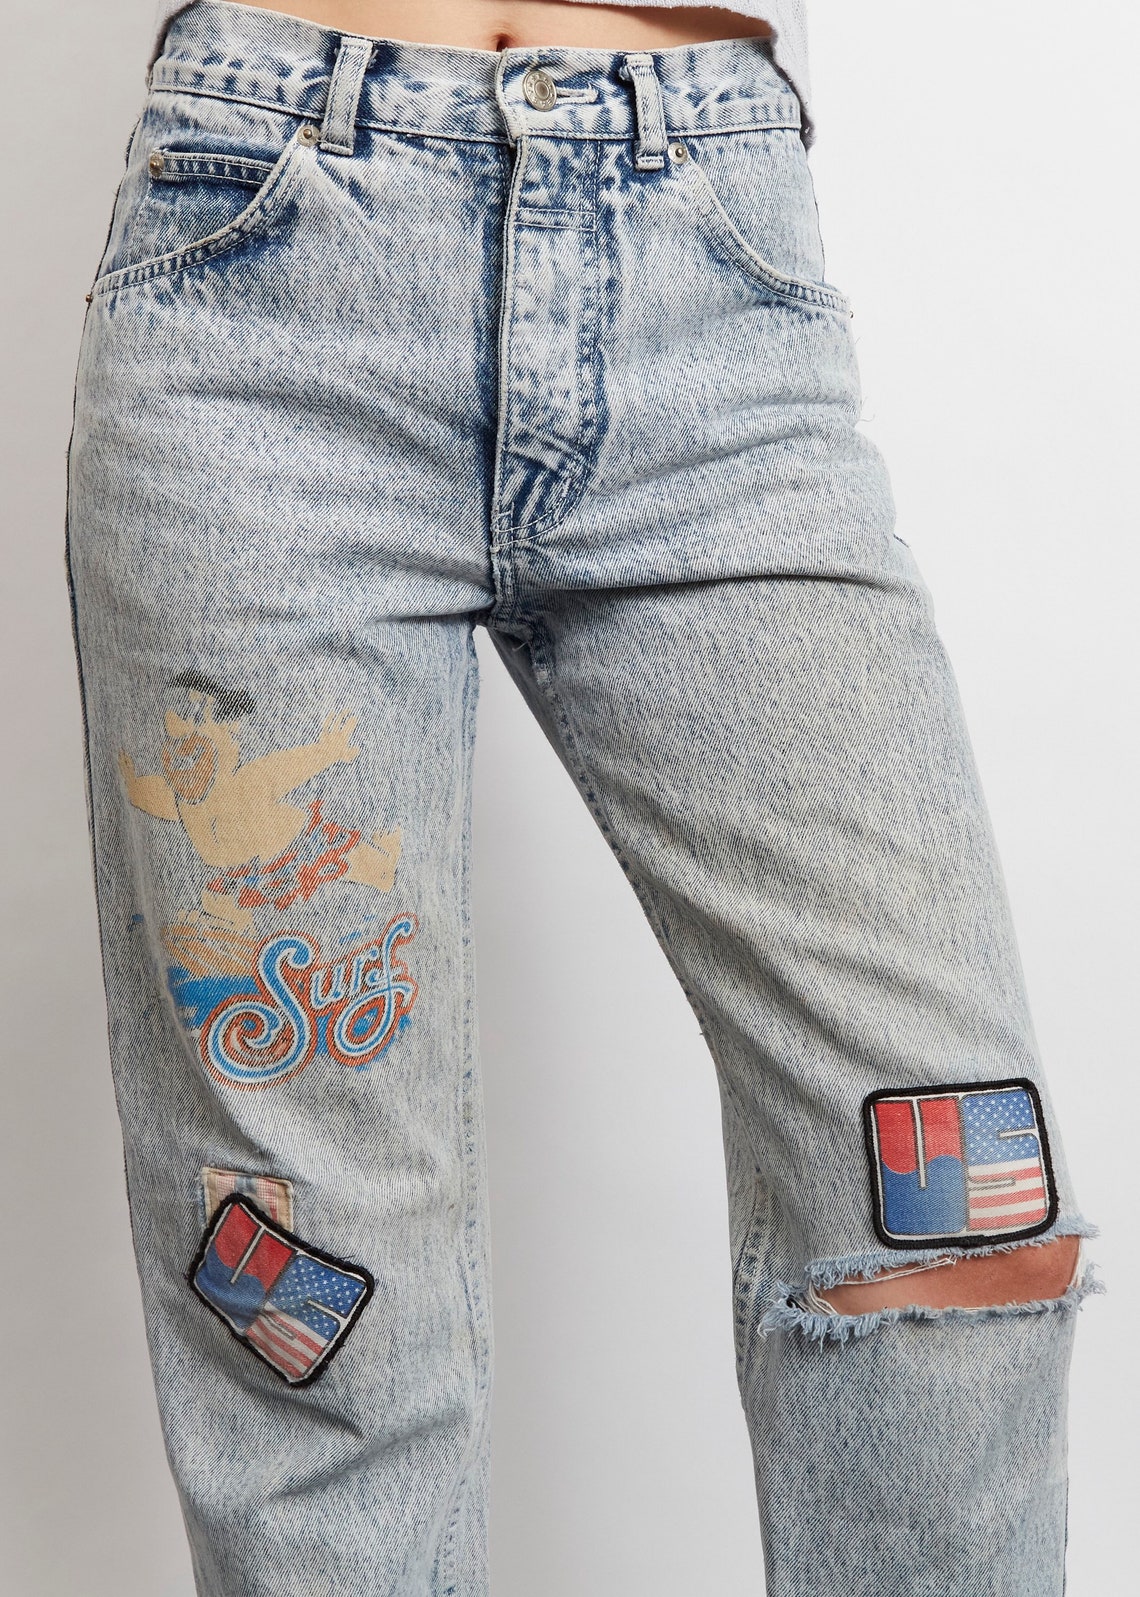 Vintage 1990'a light wash High Waisted Flintstones Jeans | Etsy